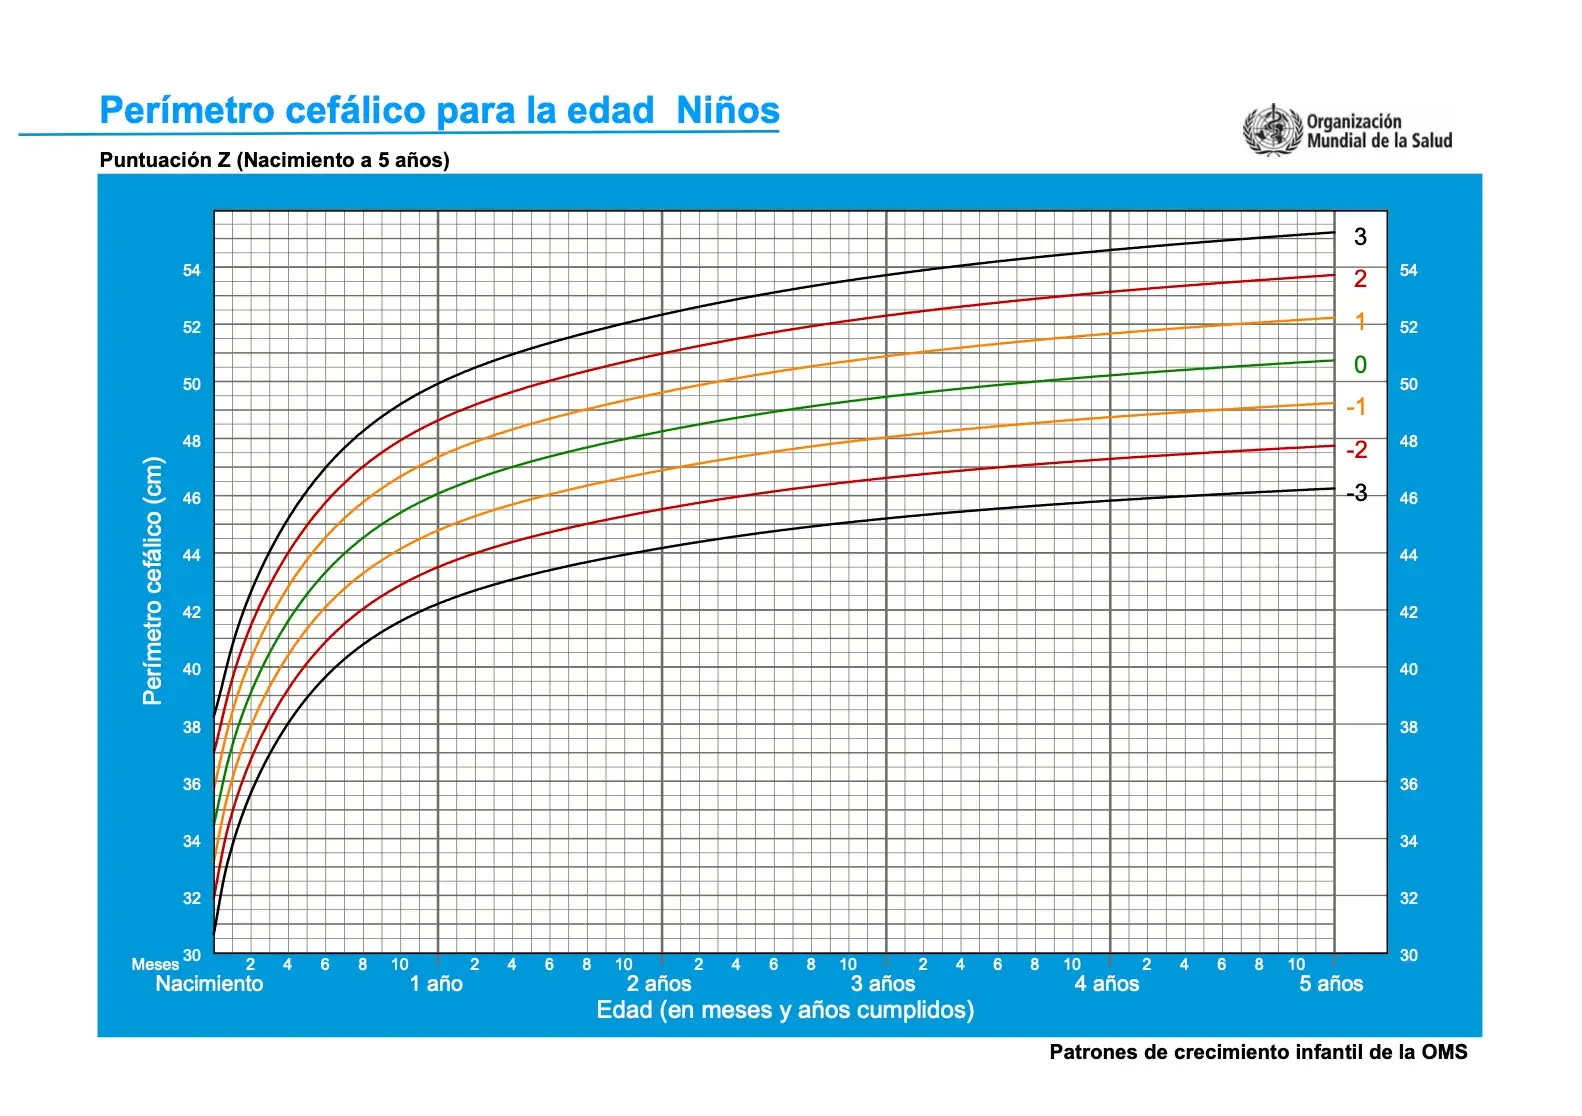 Grafica que muestra los percentiles de crecimiento comparando el perímetro cefálico con la edad de los niños bebés del nacimiento a los dos años de edad